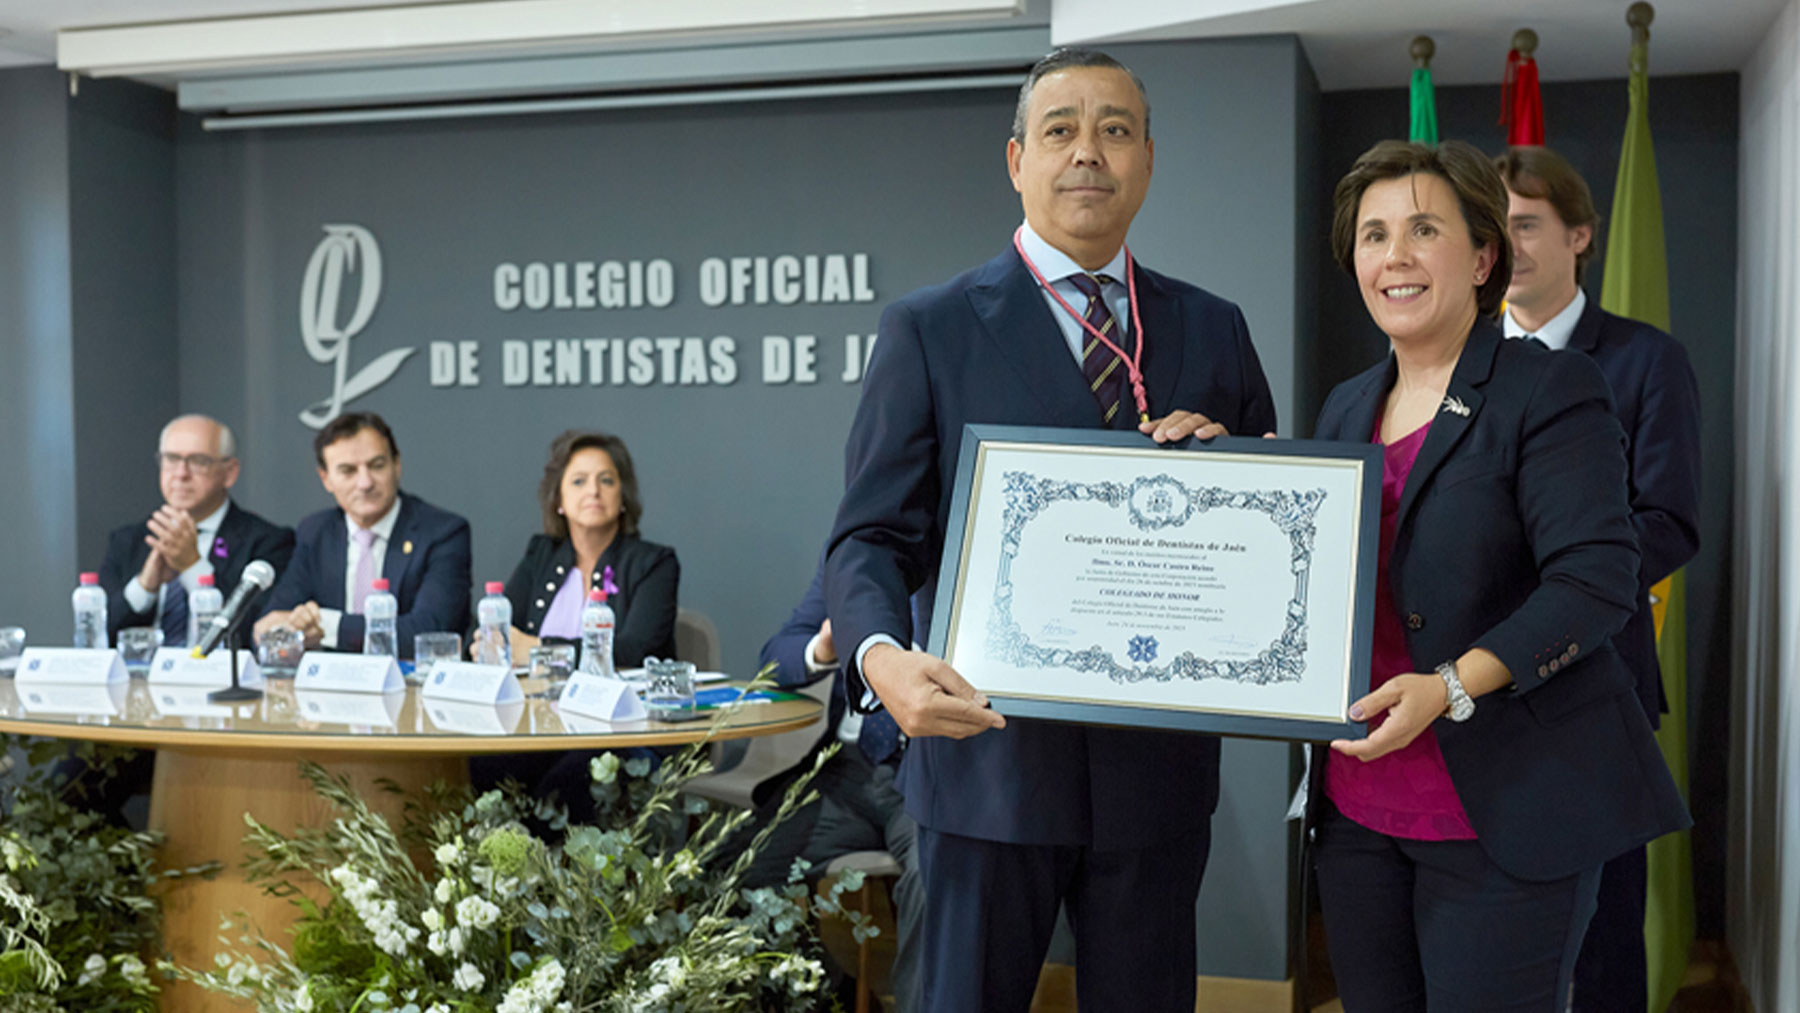 El presidente del Consejo de Dentistas ha mostrado su agradecimiento y apoyo al Colegio de Dentistas de Jaén.